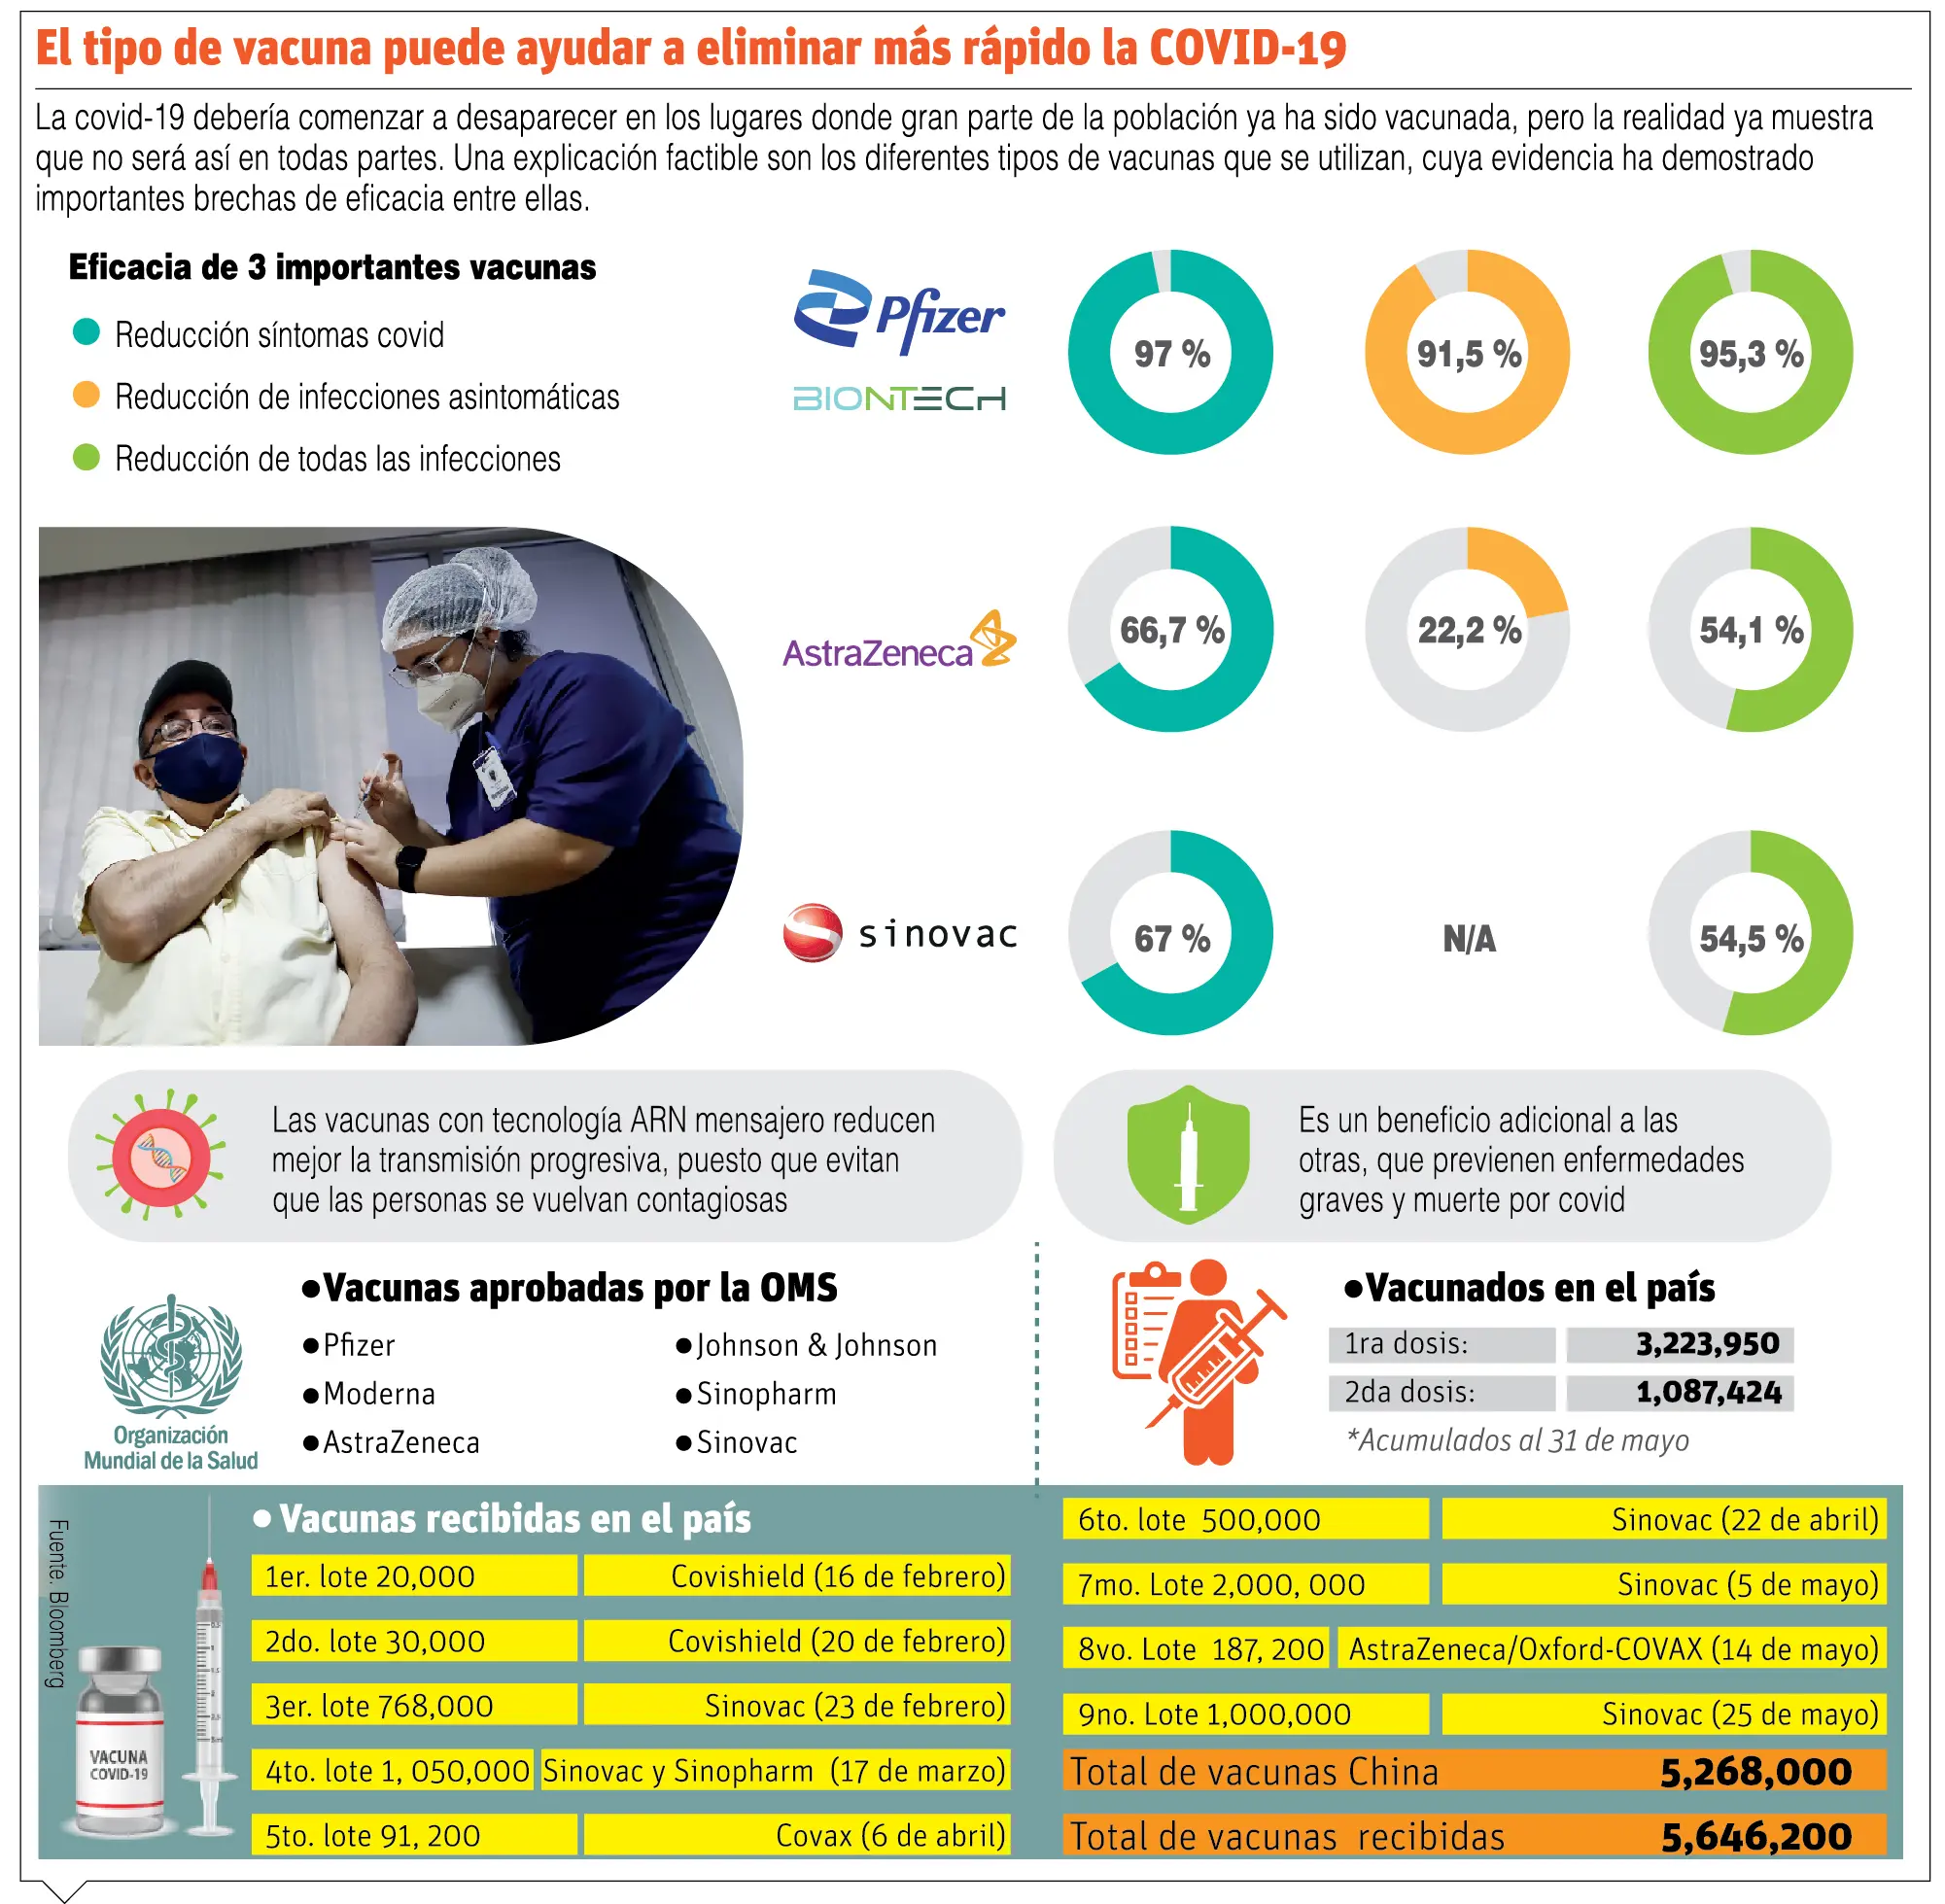 Organización Mundial de la Salud aprueba uso de vacuna Sinovac contra Covid-19